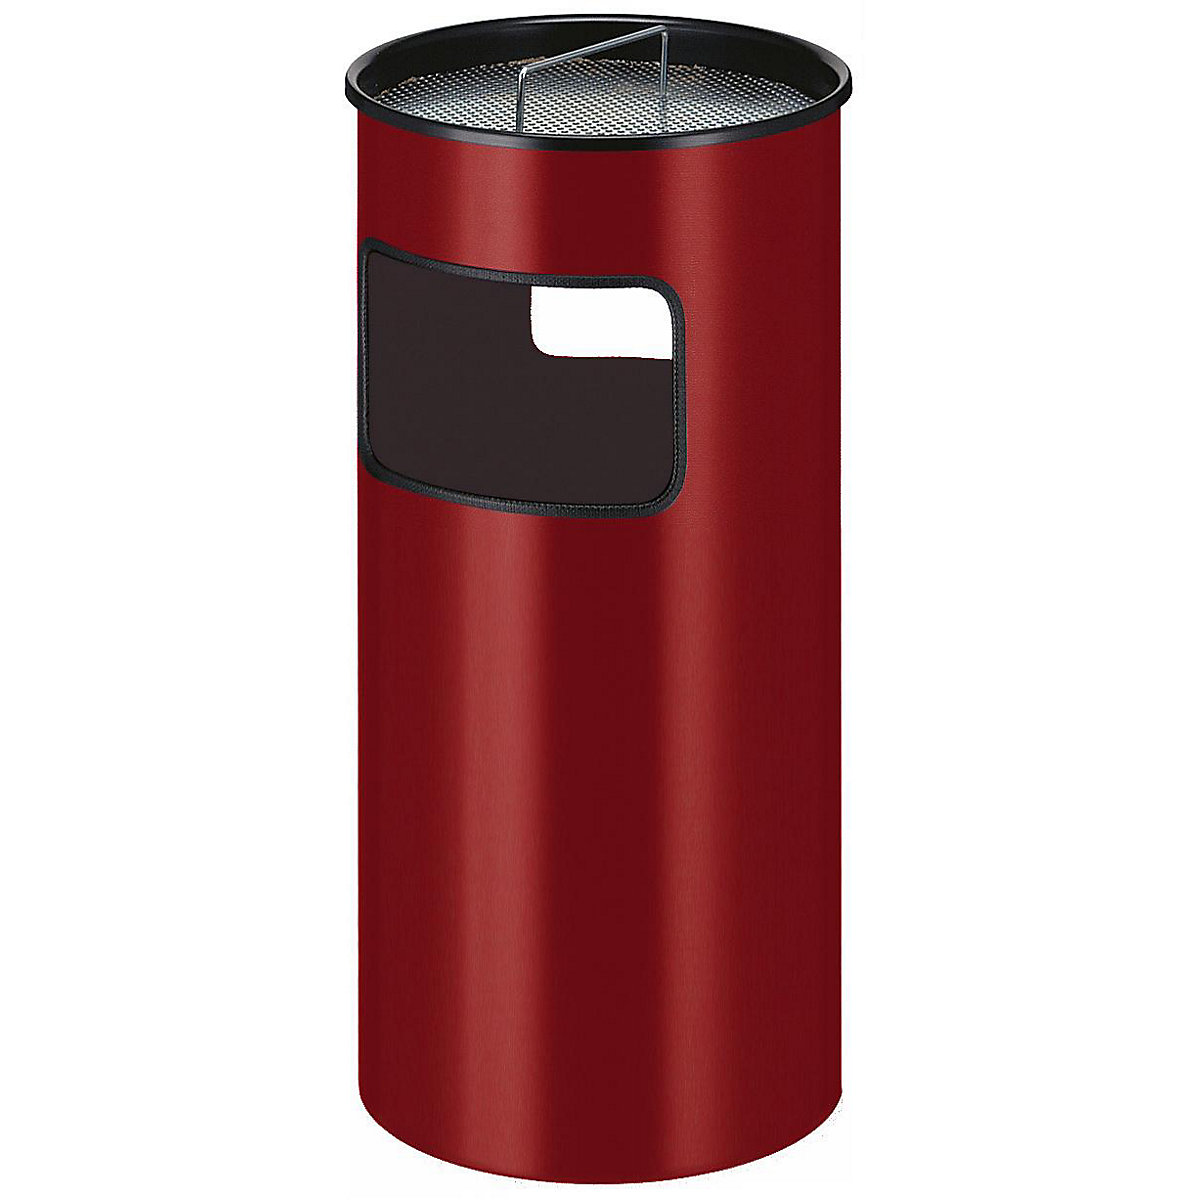 Combiné cendrier-poubelle, capacité 50 l, h x Ø 690 x 320 mm, rouge-2